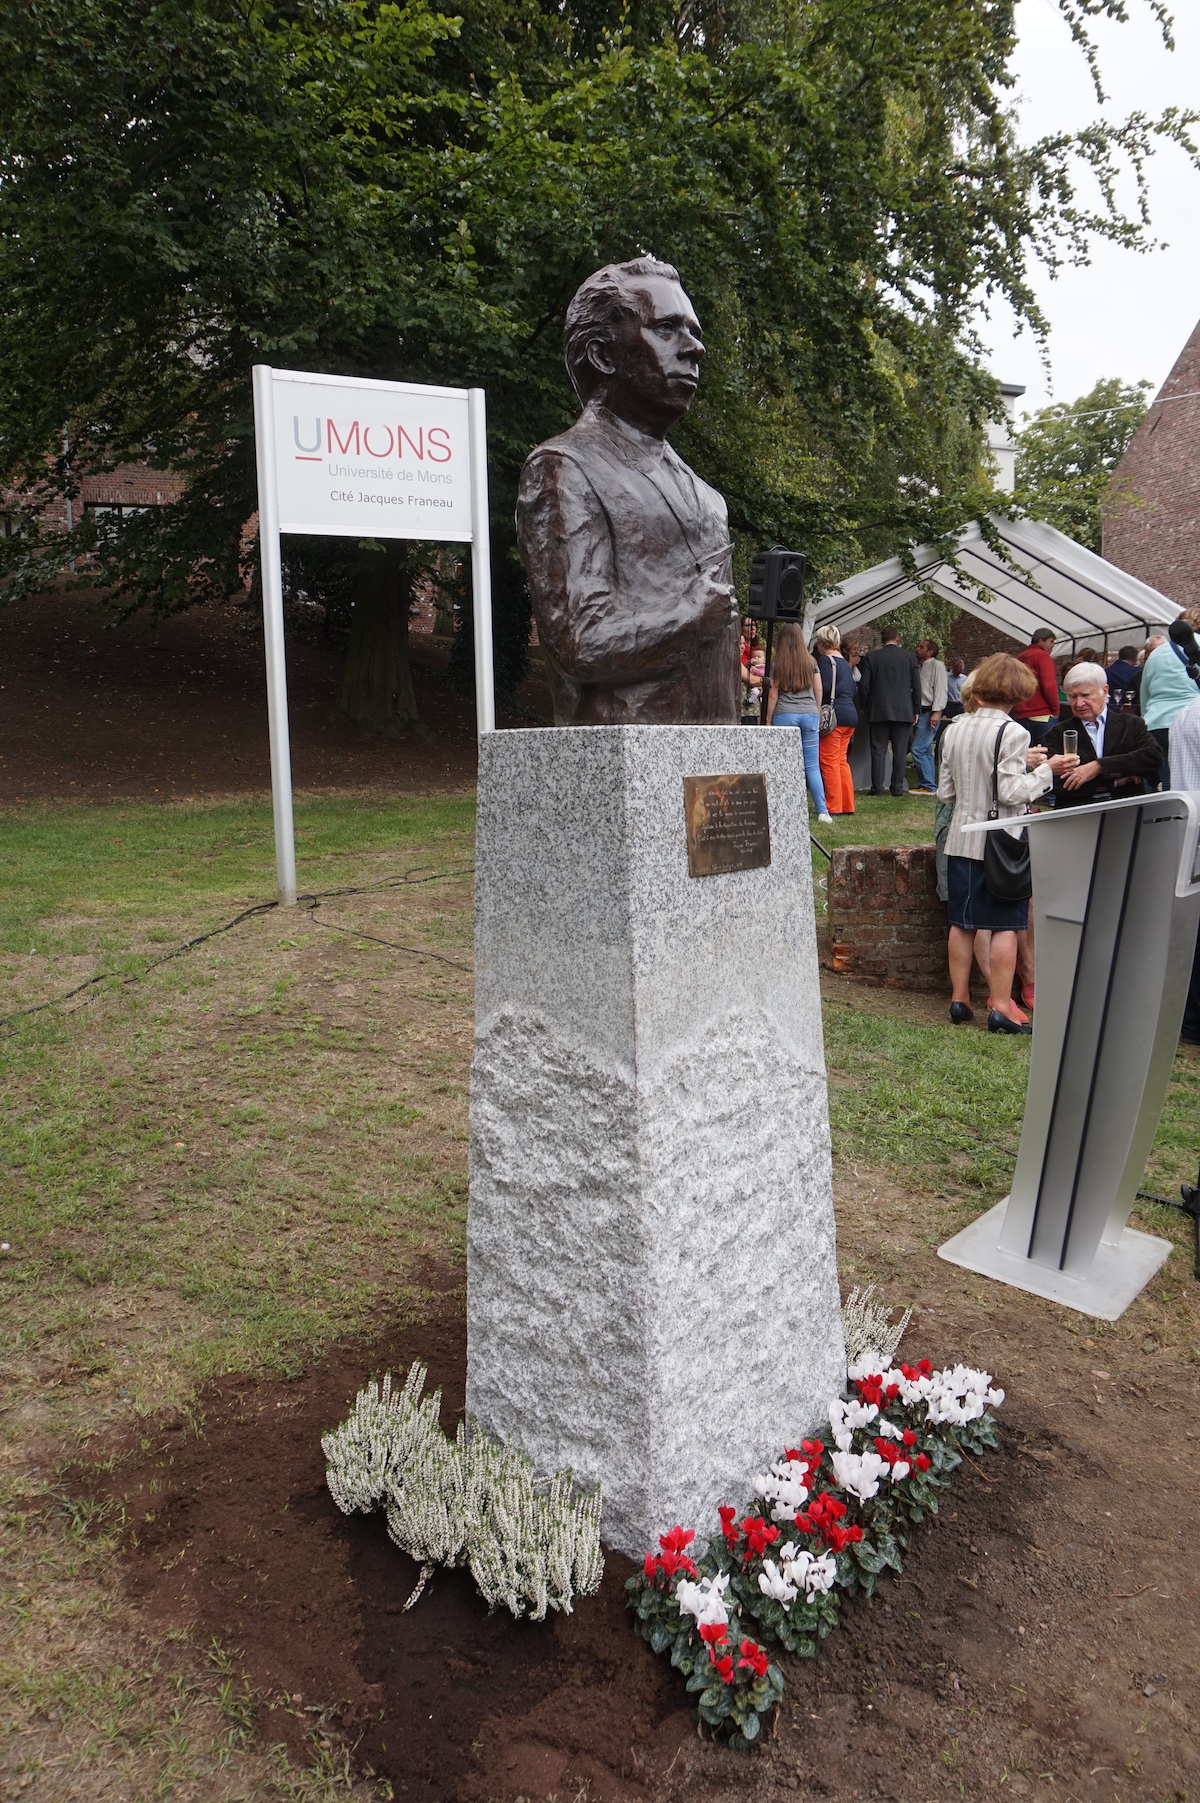 Inauguration à Mons, Belgique, du monument en hommage à Jacques Franeau